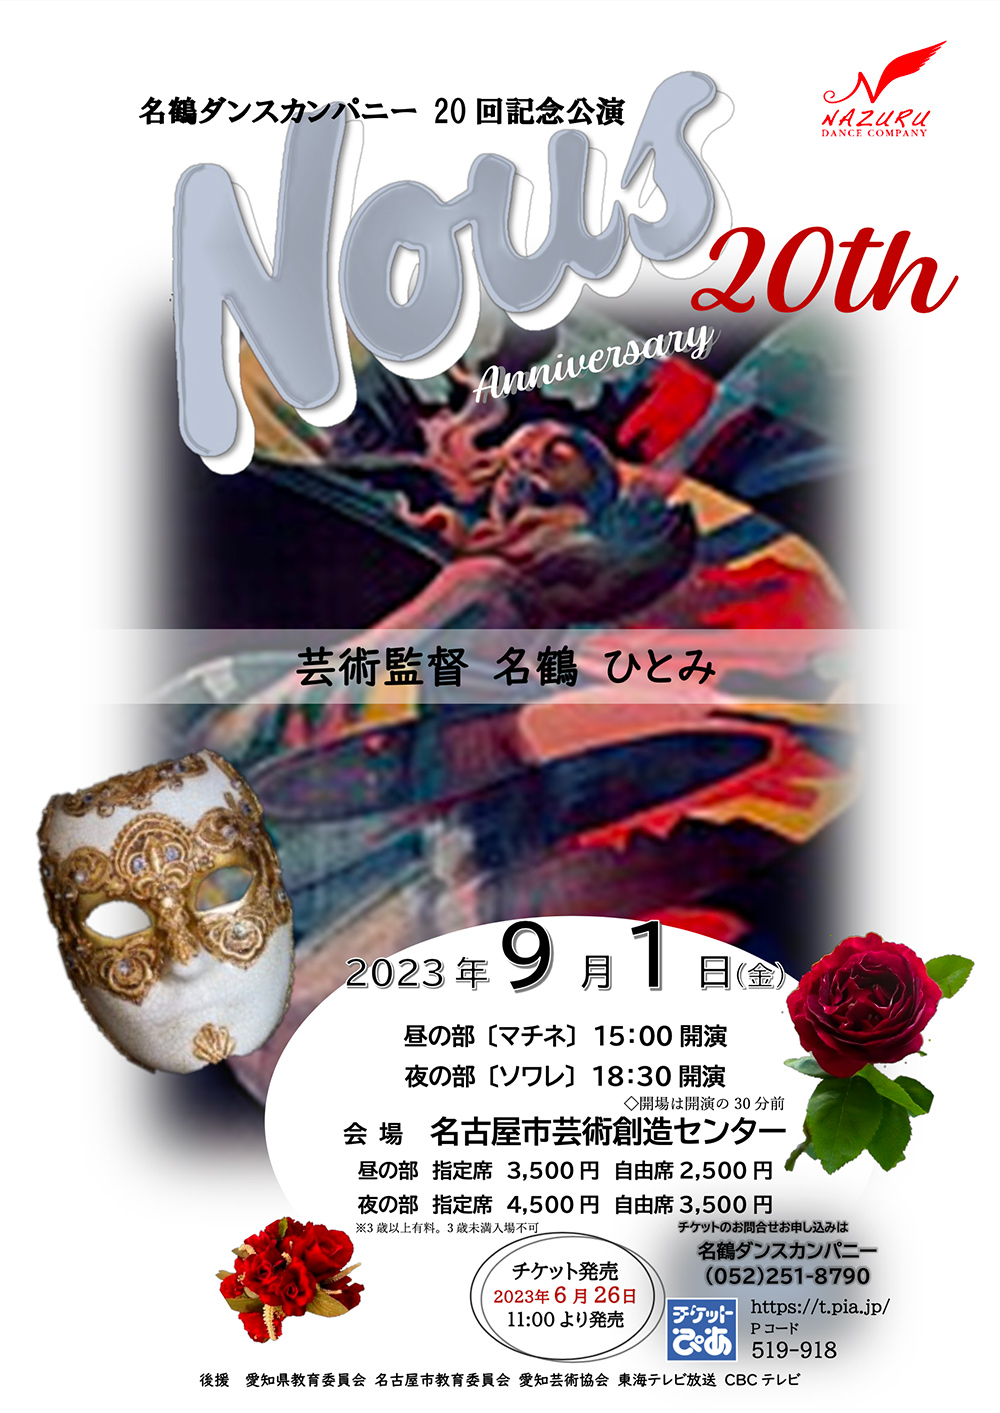 2023年9月1日(金）第20回記念公演『Nous 20th』開催 名古屋市芸術創造センターにて